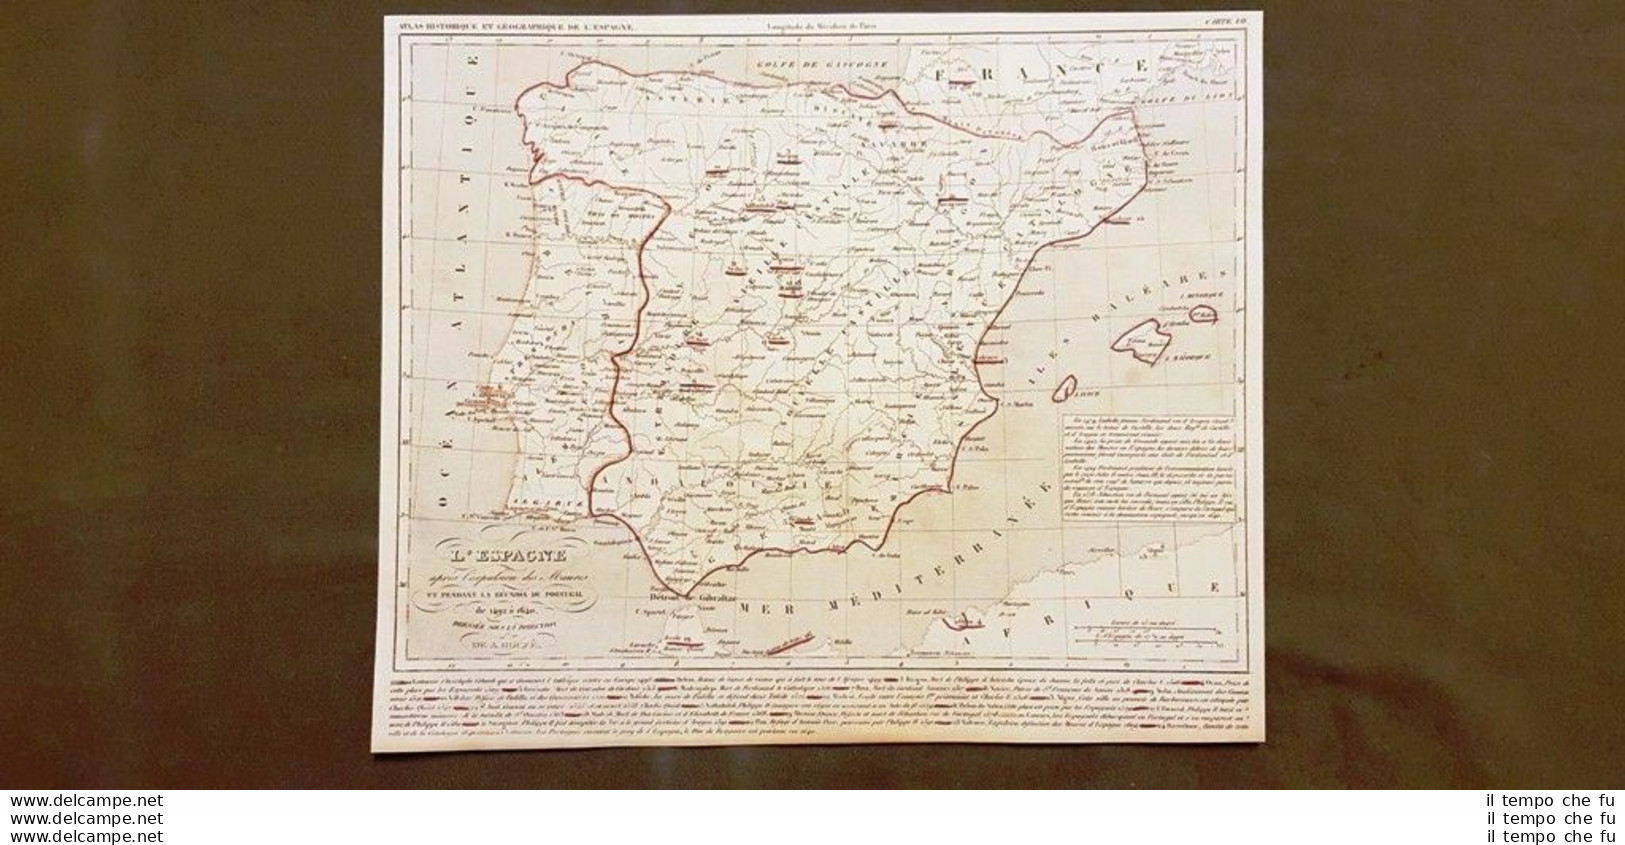 Spagna Dopo I Mori E Con Il Portogallo 1492-1640 Carta Geografica Del 1859 Houze - Carte Geographique